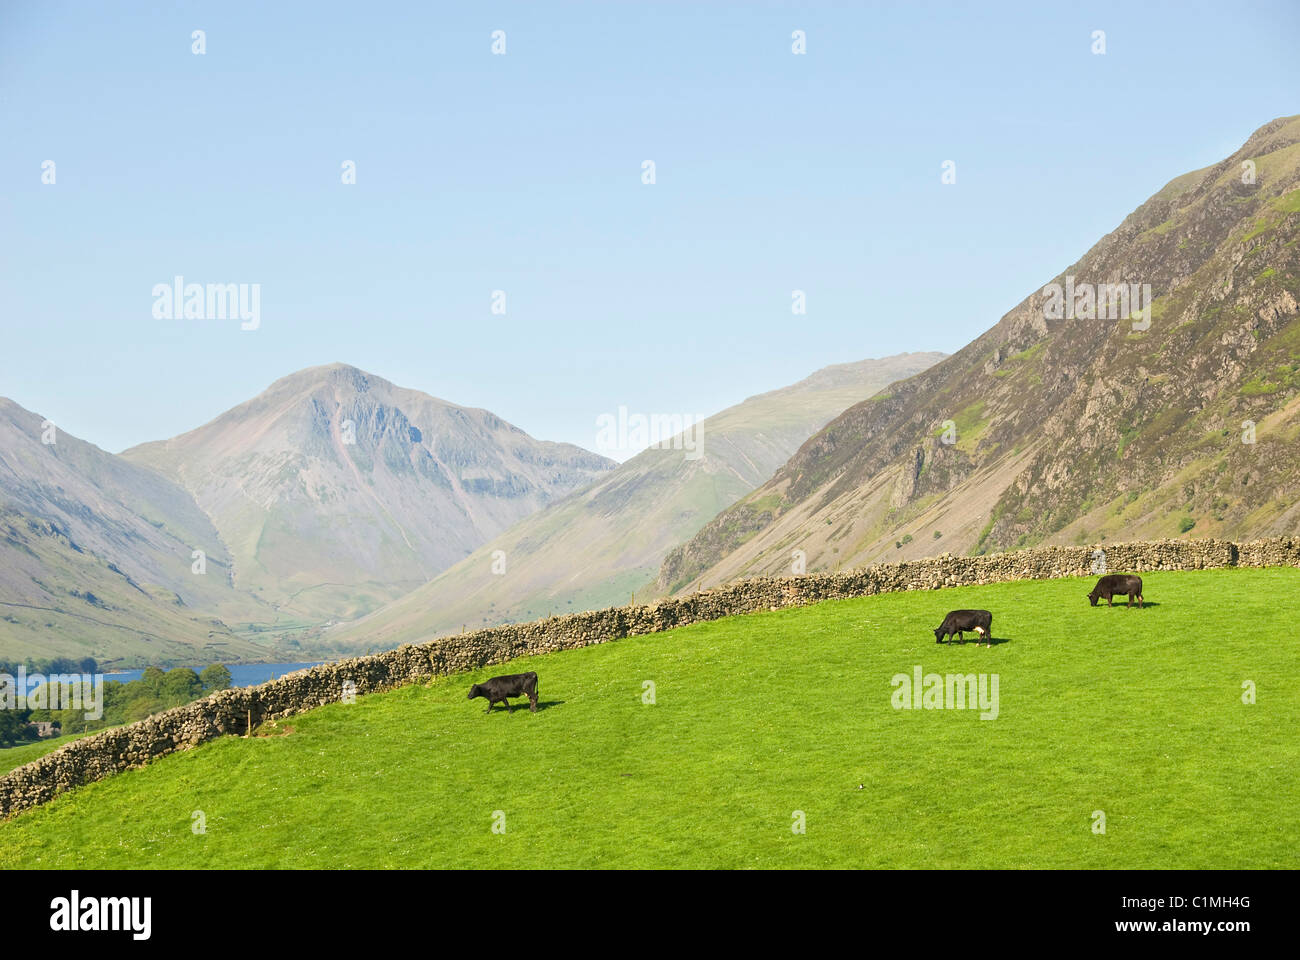 Vacche su un pascolo, muro di pietra, montagne 'grande timpano' e 'i ghiaioni', Wastwater, Wasdale Valley, Cumbria, Lake District, REGNO UNITO Foto Stock